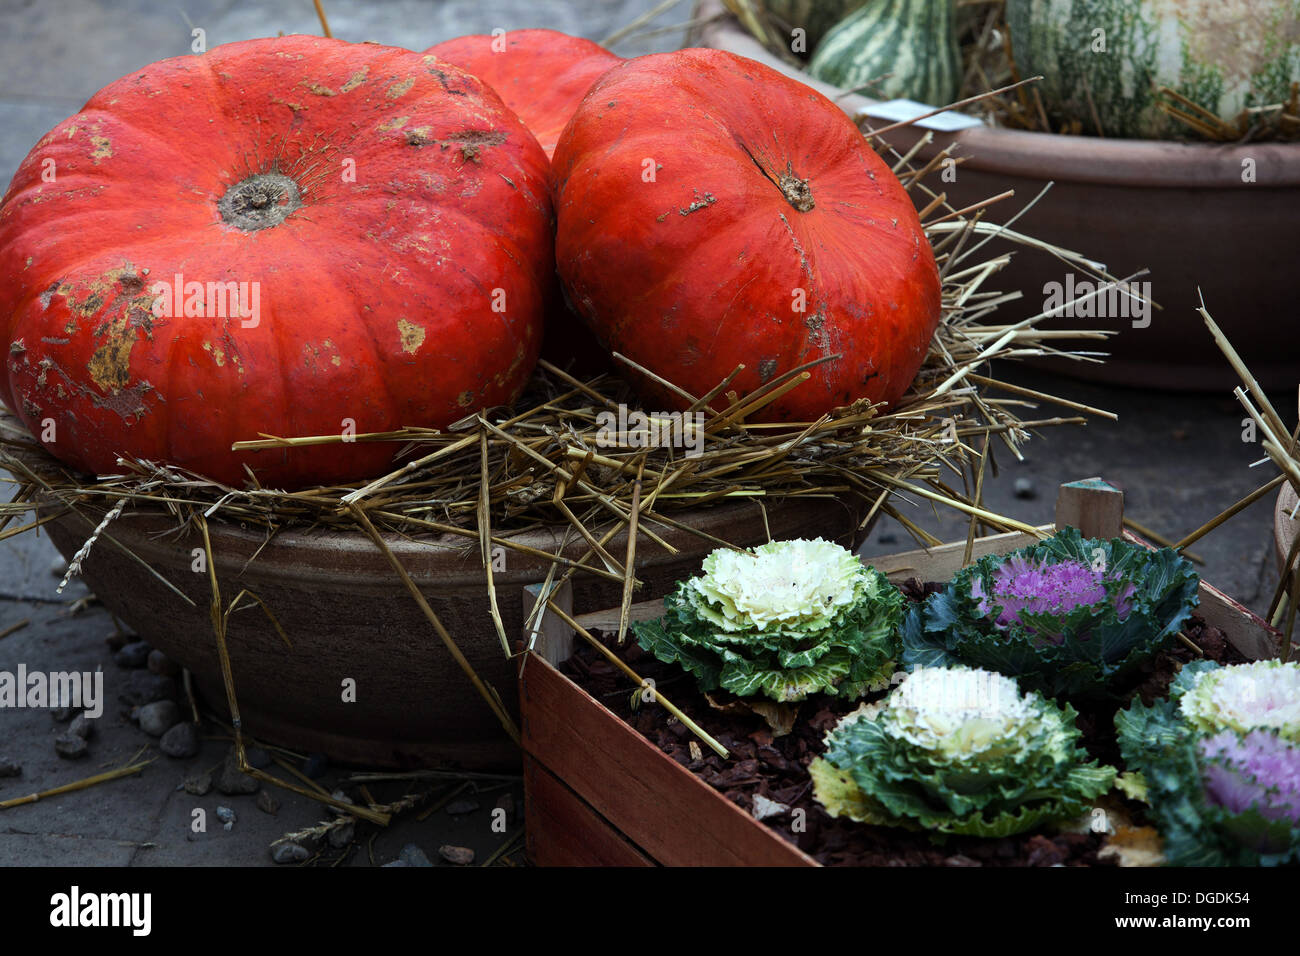 Display di autunno, zucche, squash Foto Stock